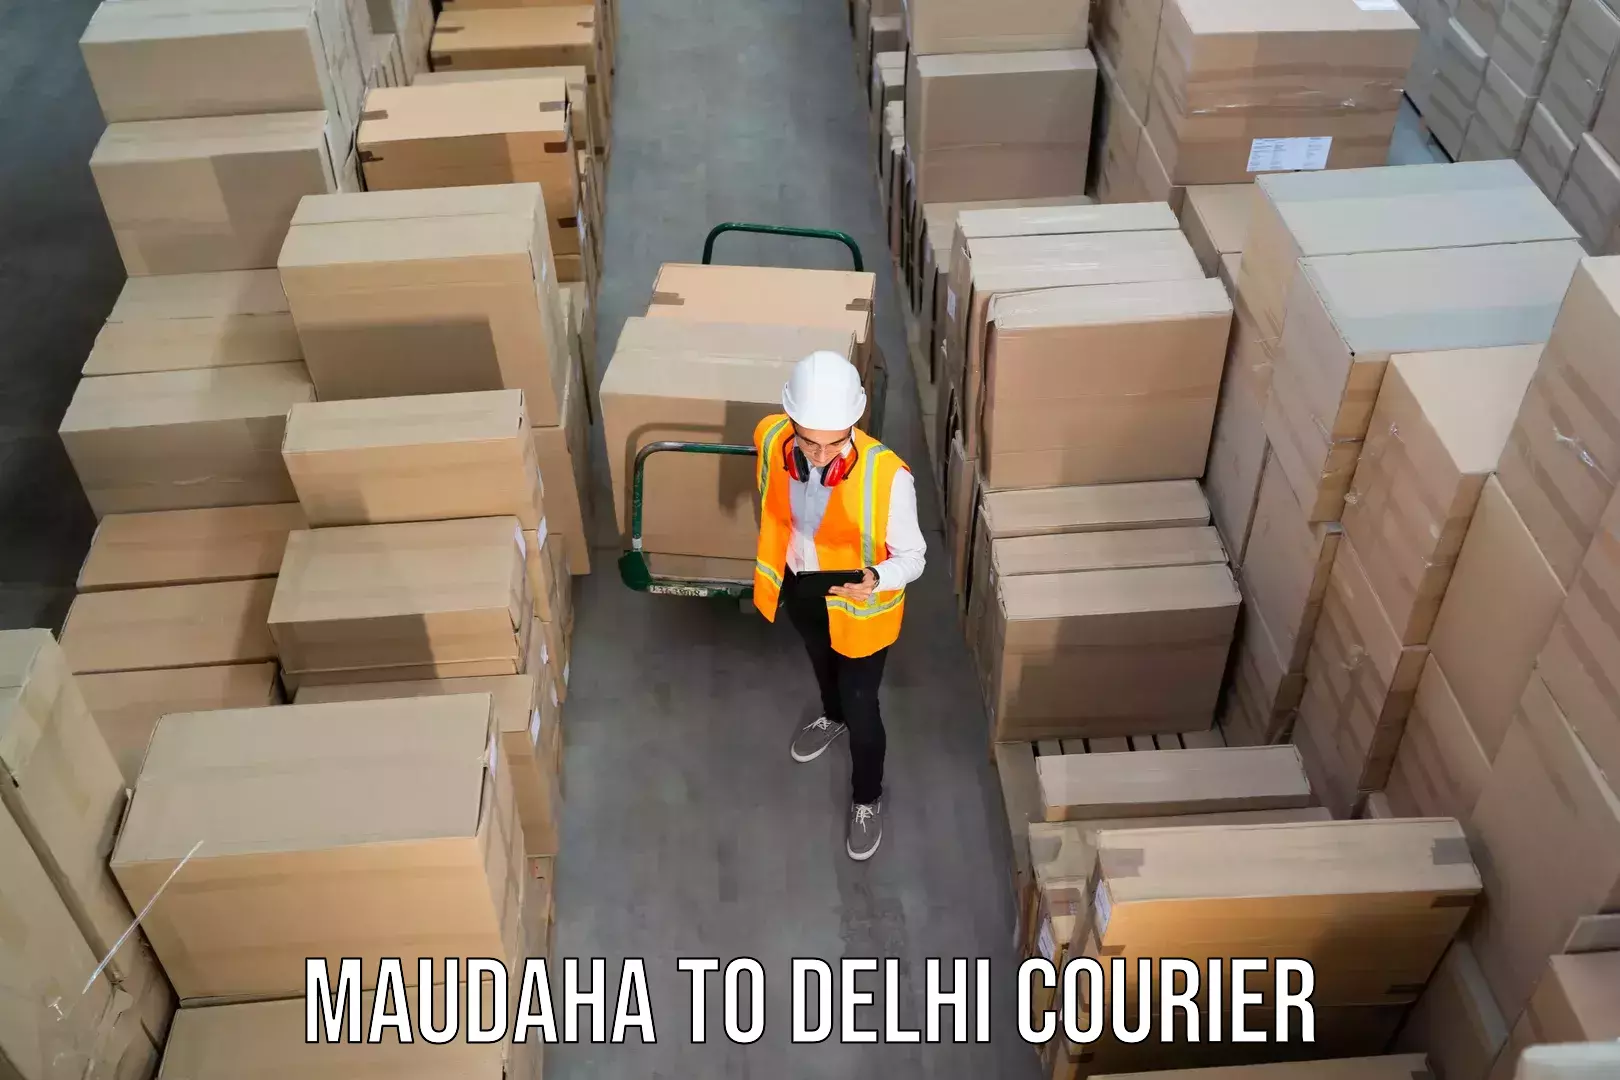 Weekend courier service Maudaha to Indraprastha